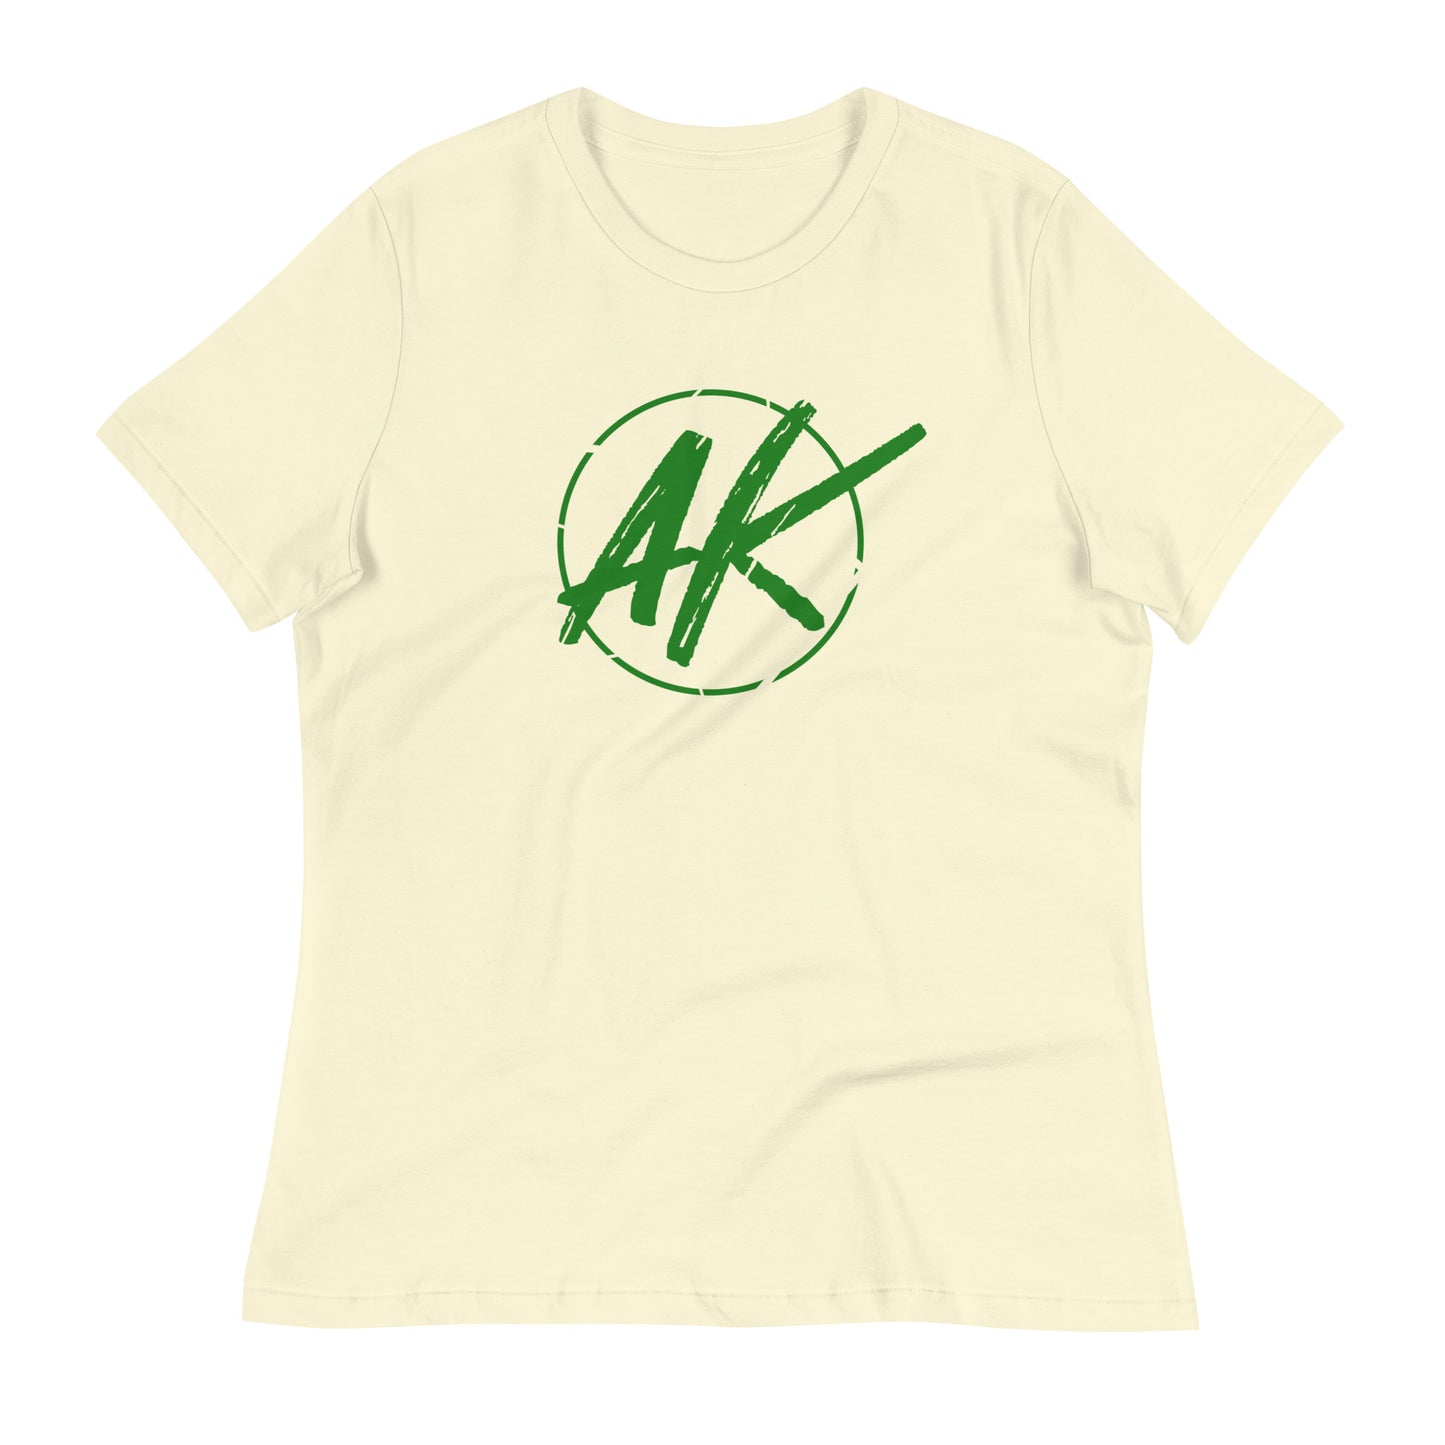 W| AK (green)